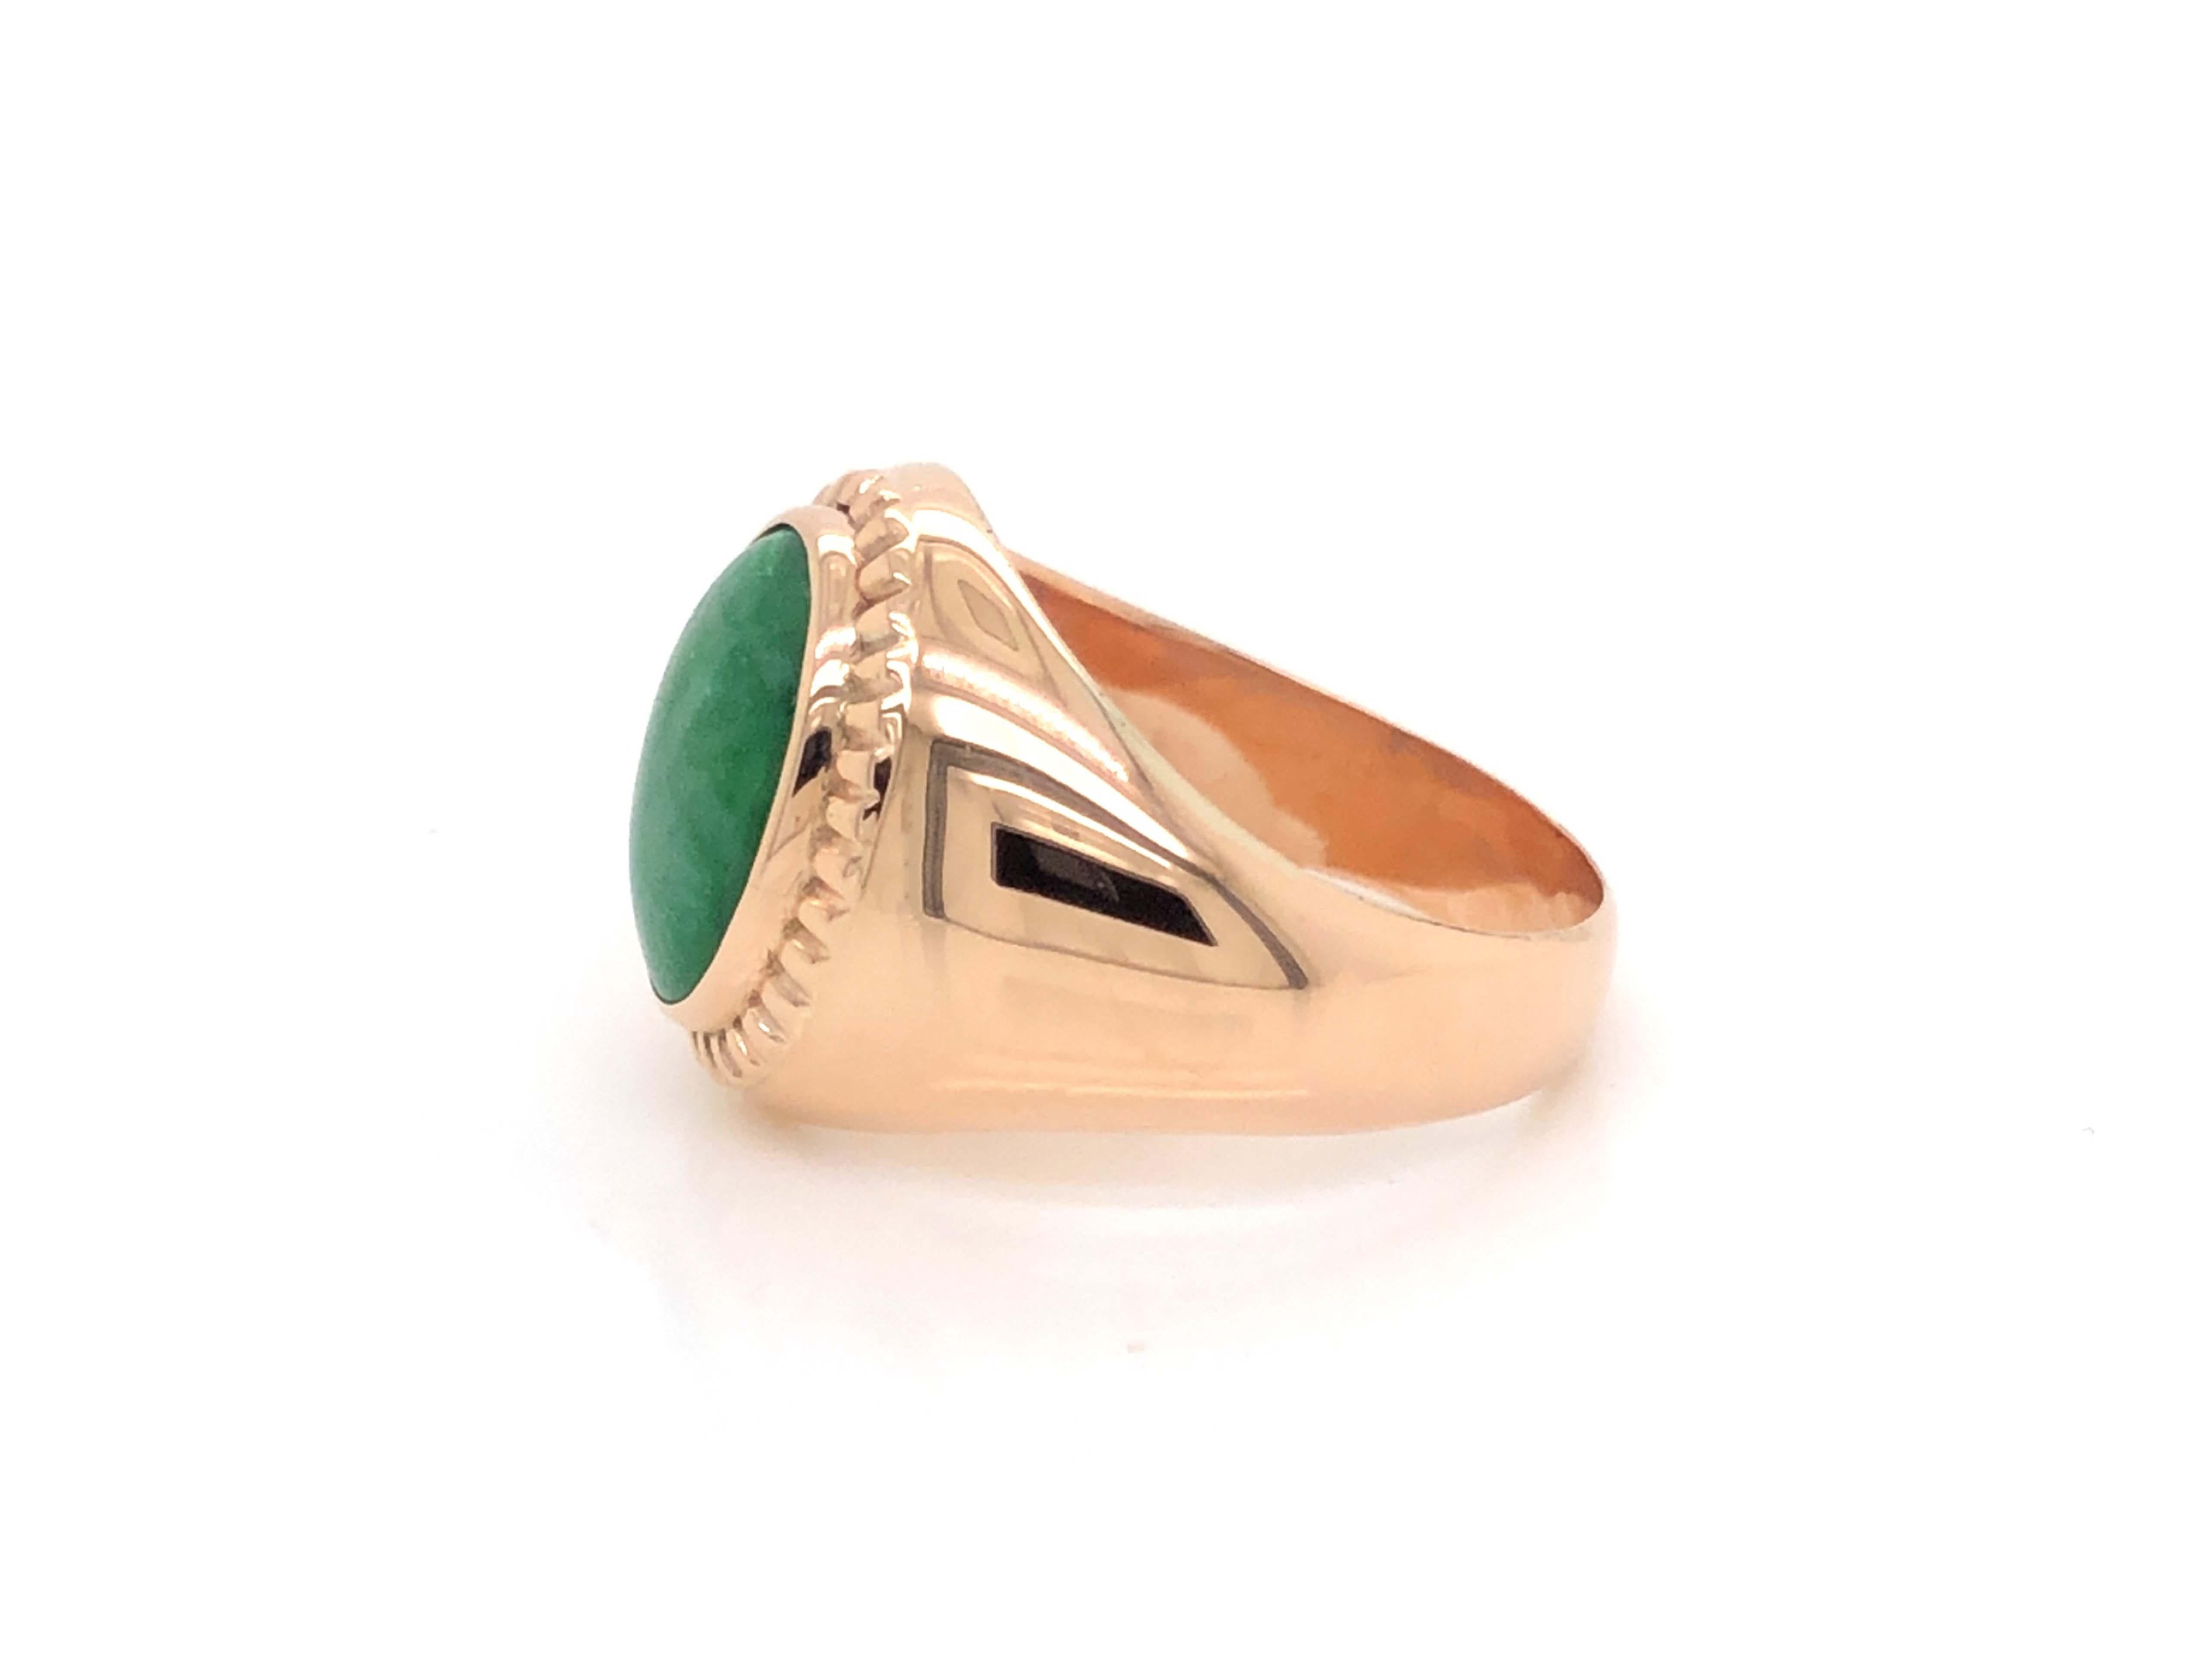 Women's Vintage Men's Oval Cabochon Vivid Mottled Green Jade Ring - 14k Rose Gold